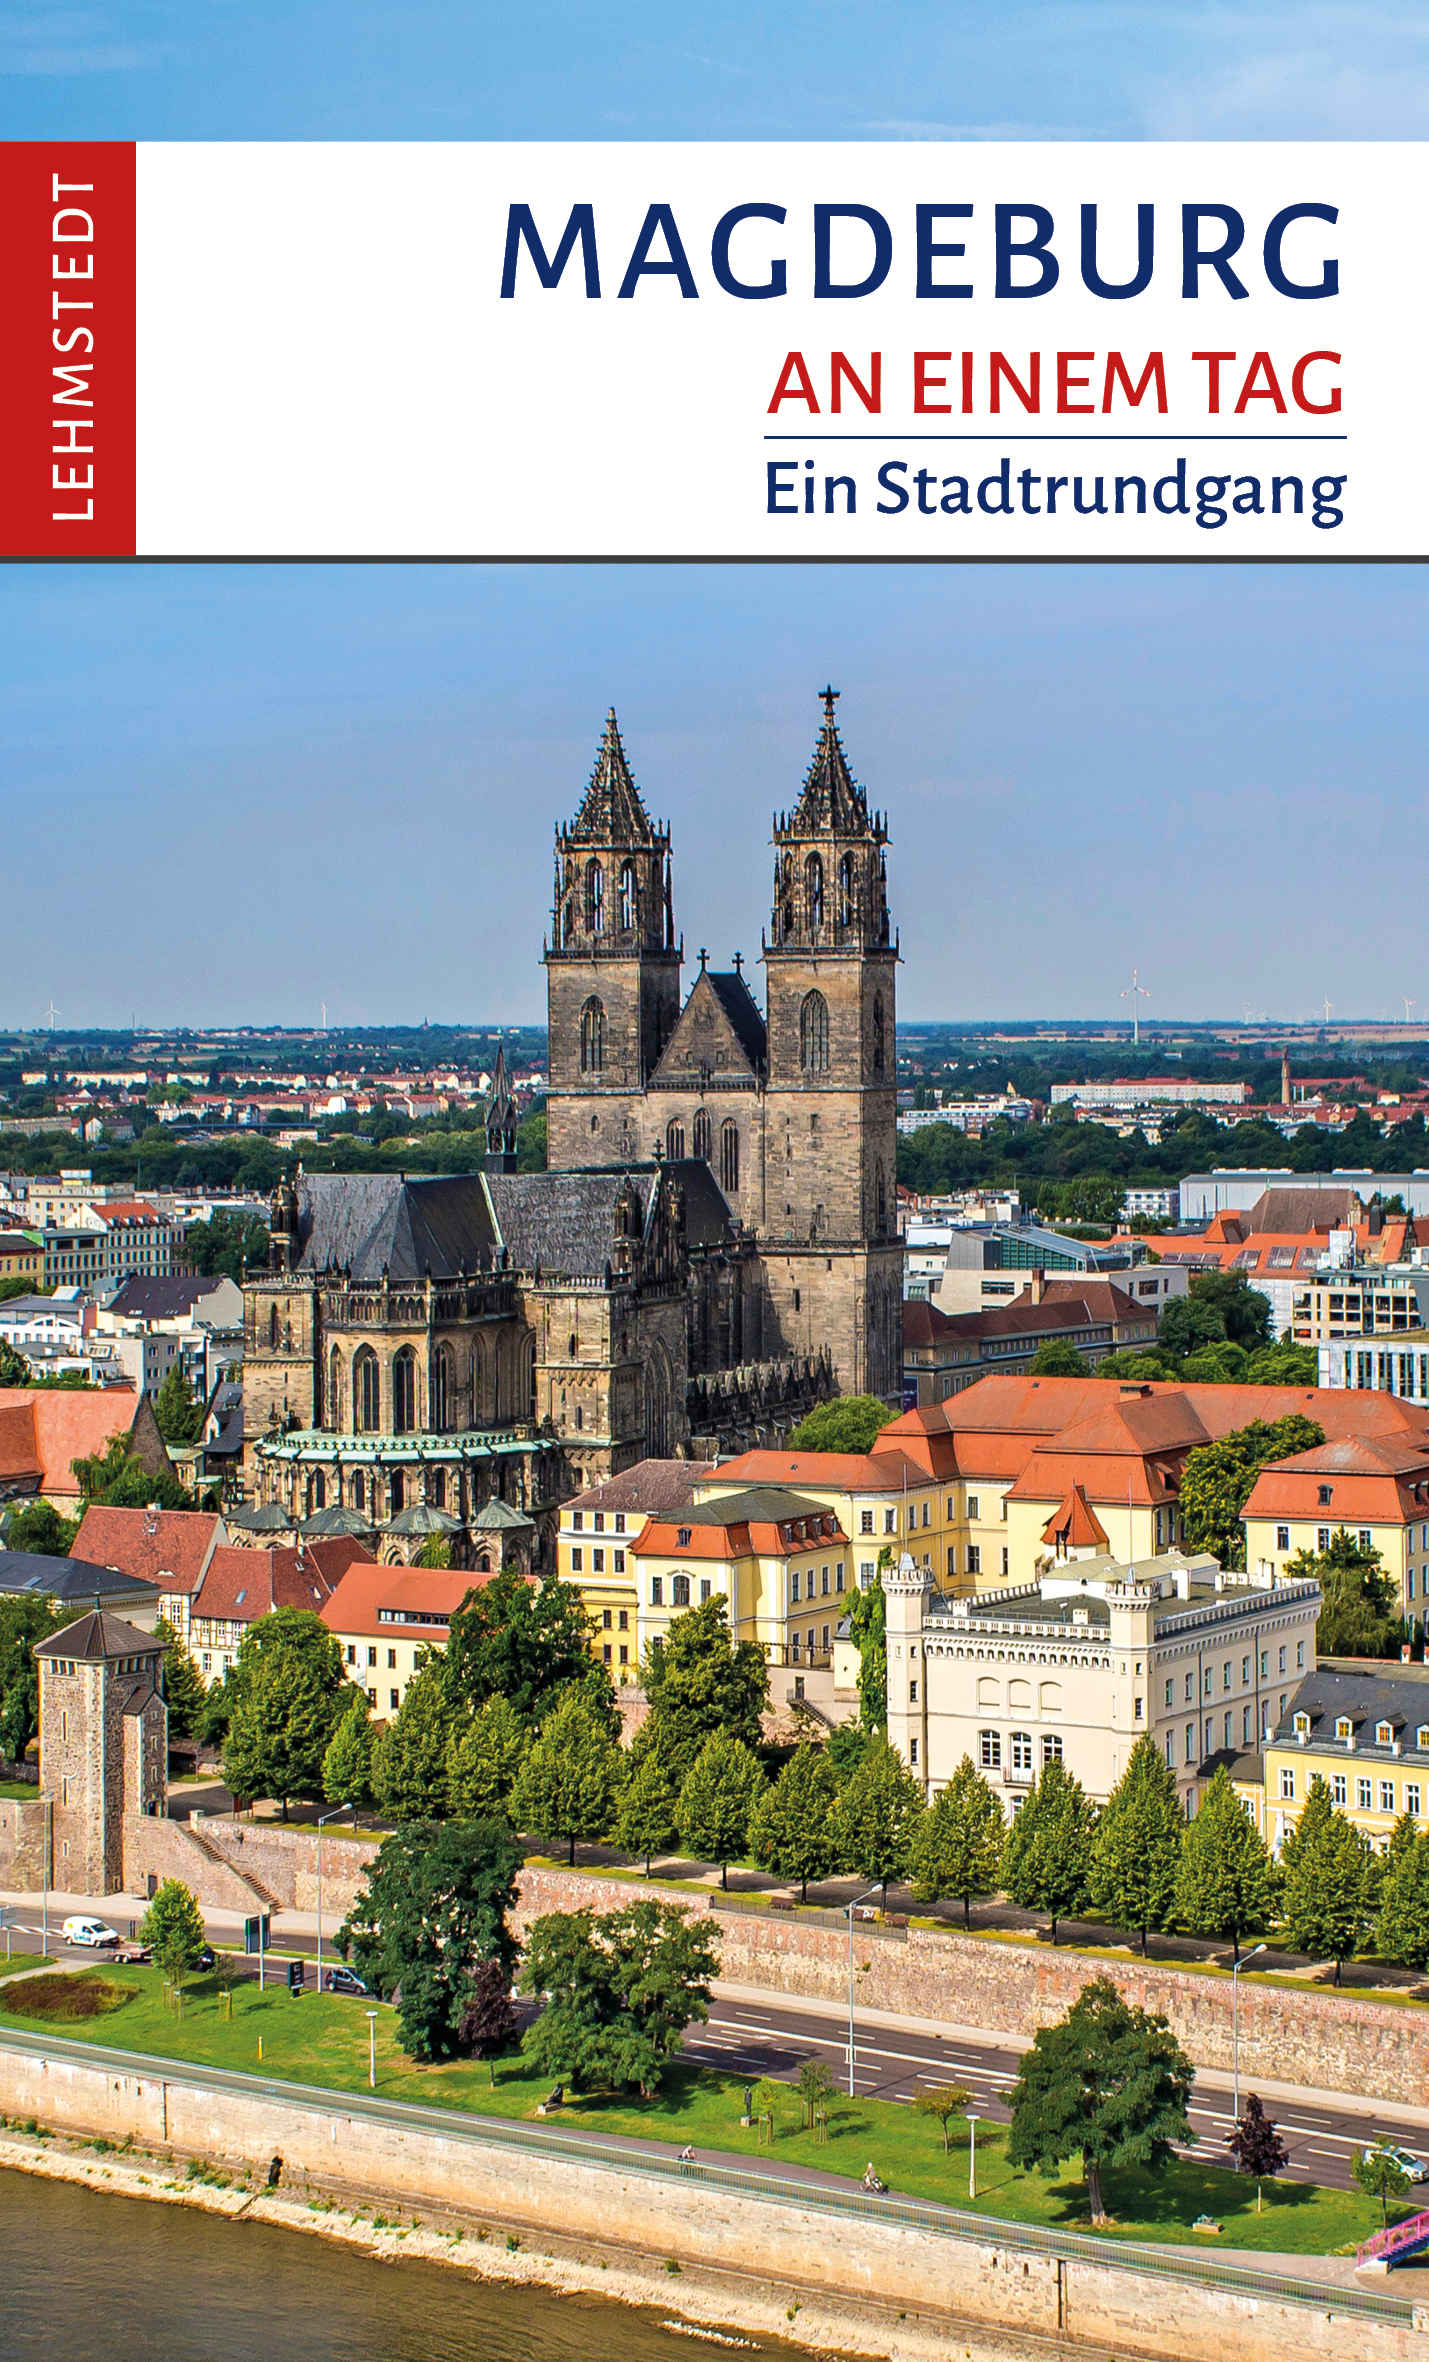 Magdeburg an einem Tag -  Ein Stadtrundgang